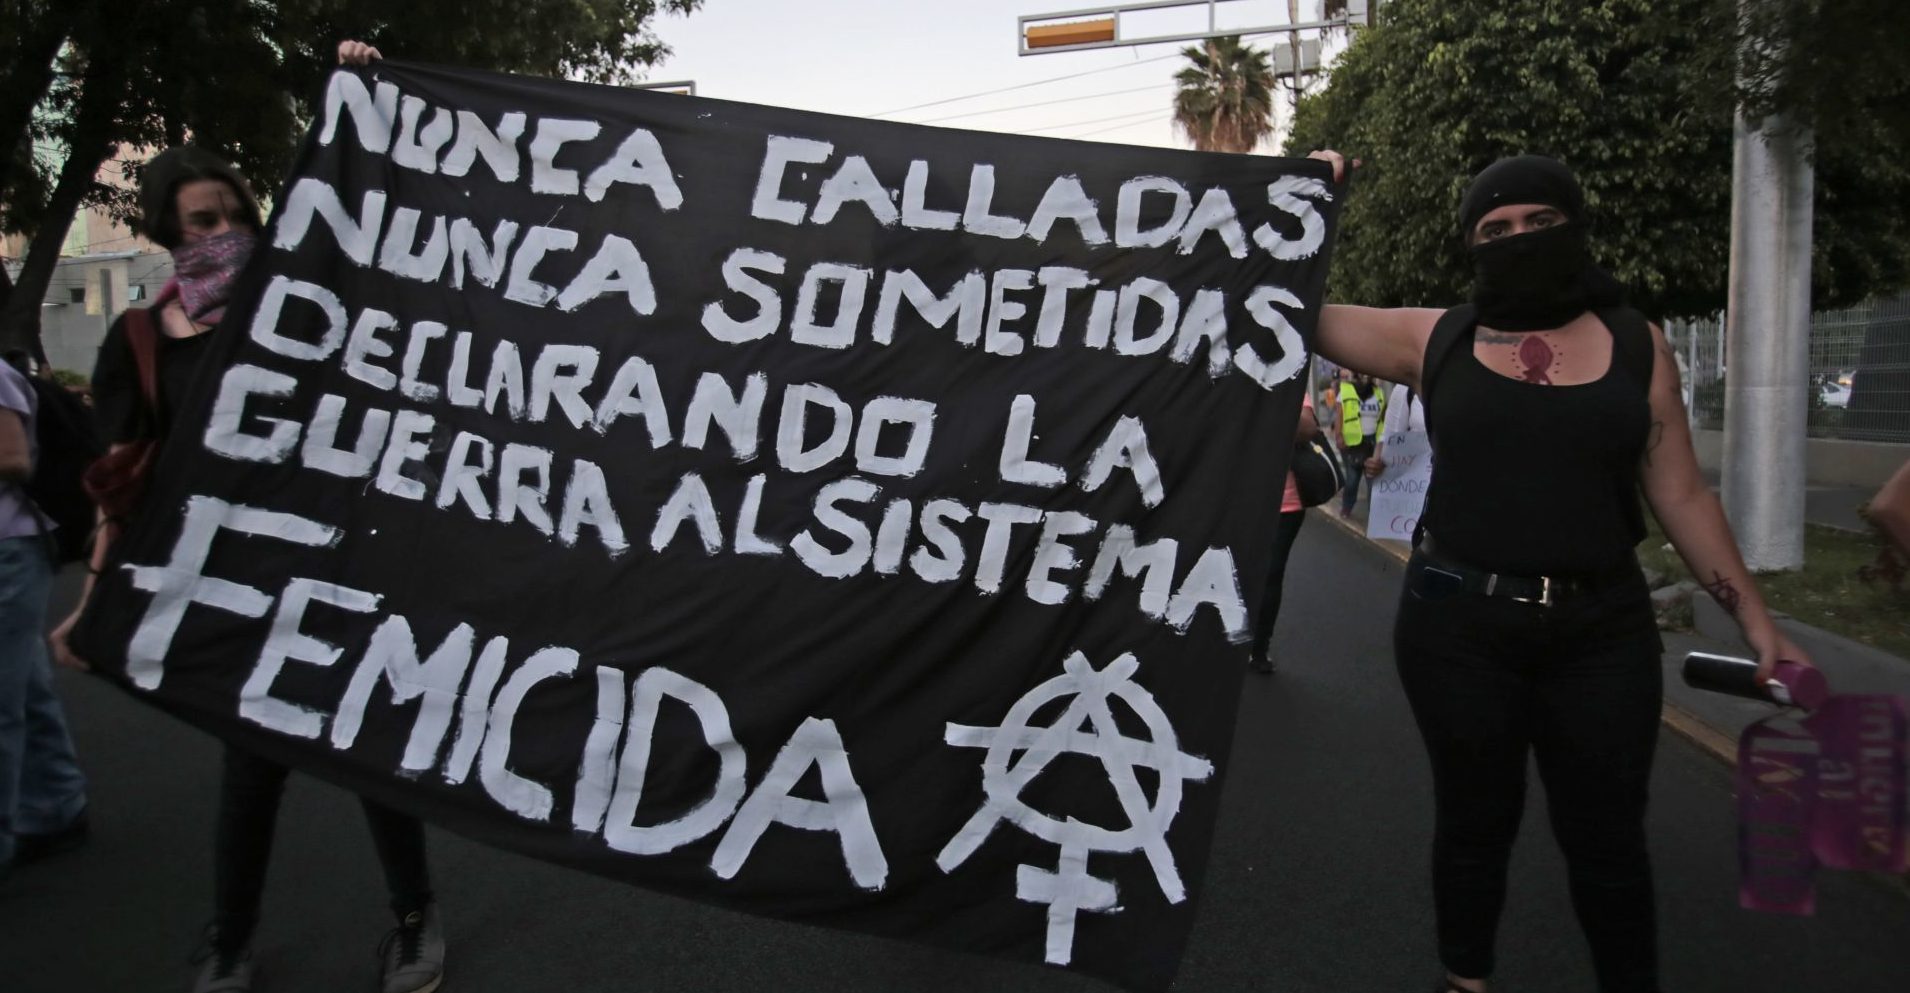 Women perform Antigrita in Guadalajara; demand justice for femicides